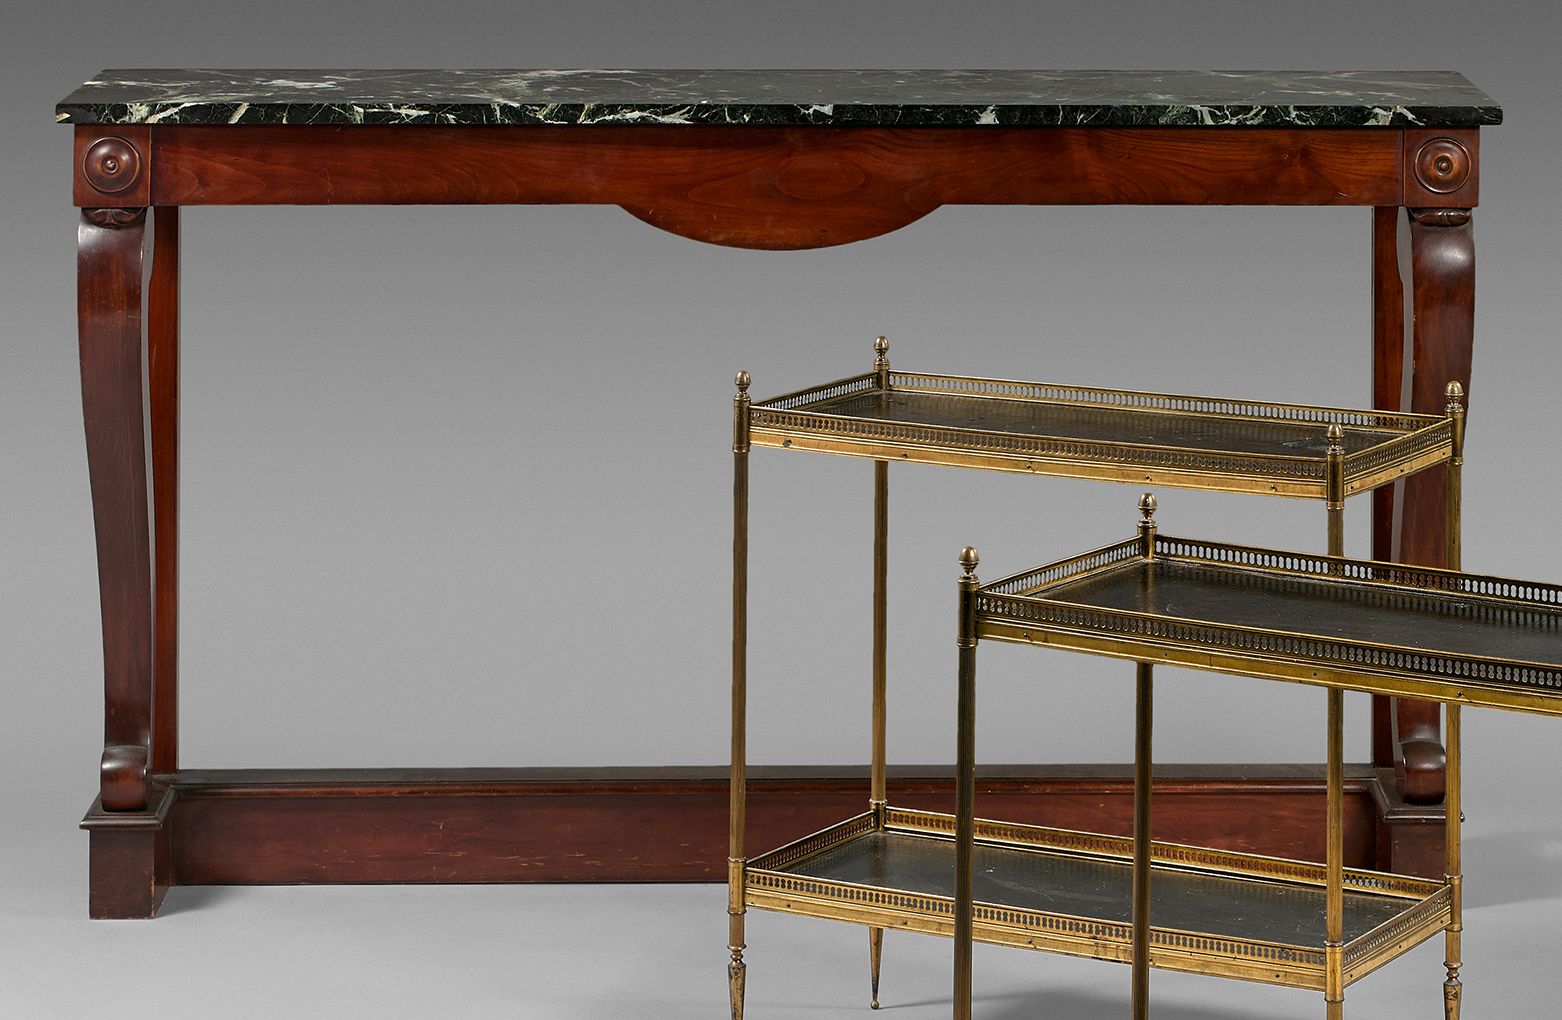 Null 狭长的桃花心木餐具柜，底座上有两个拱形的立柱。海绿色大理石桌面。
帝国风格。
高度 : 90 cm - 长度 : 150 cm
深度 : 36 cm